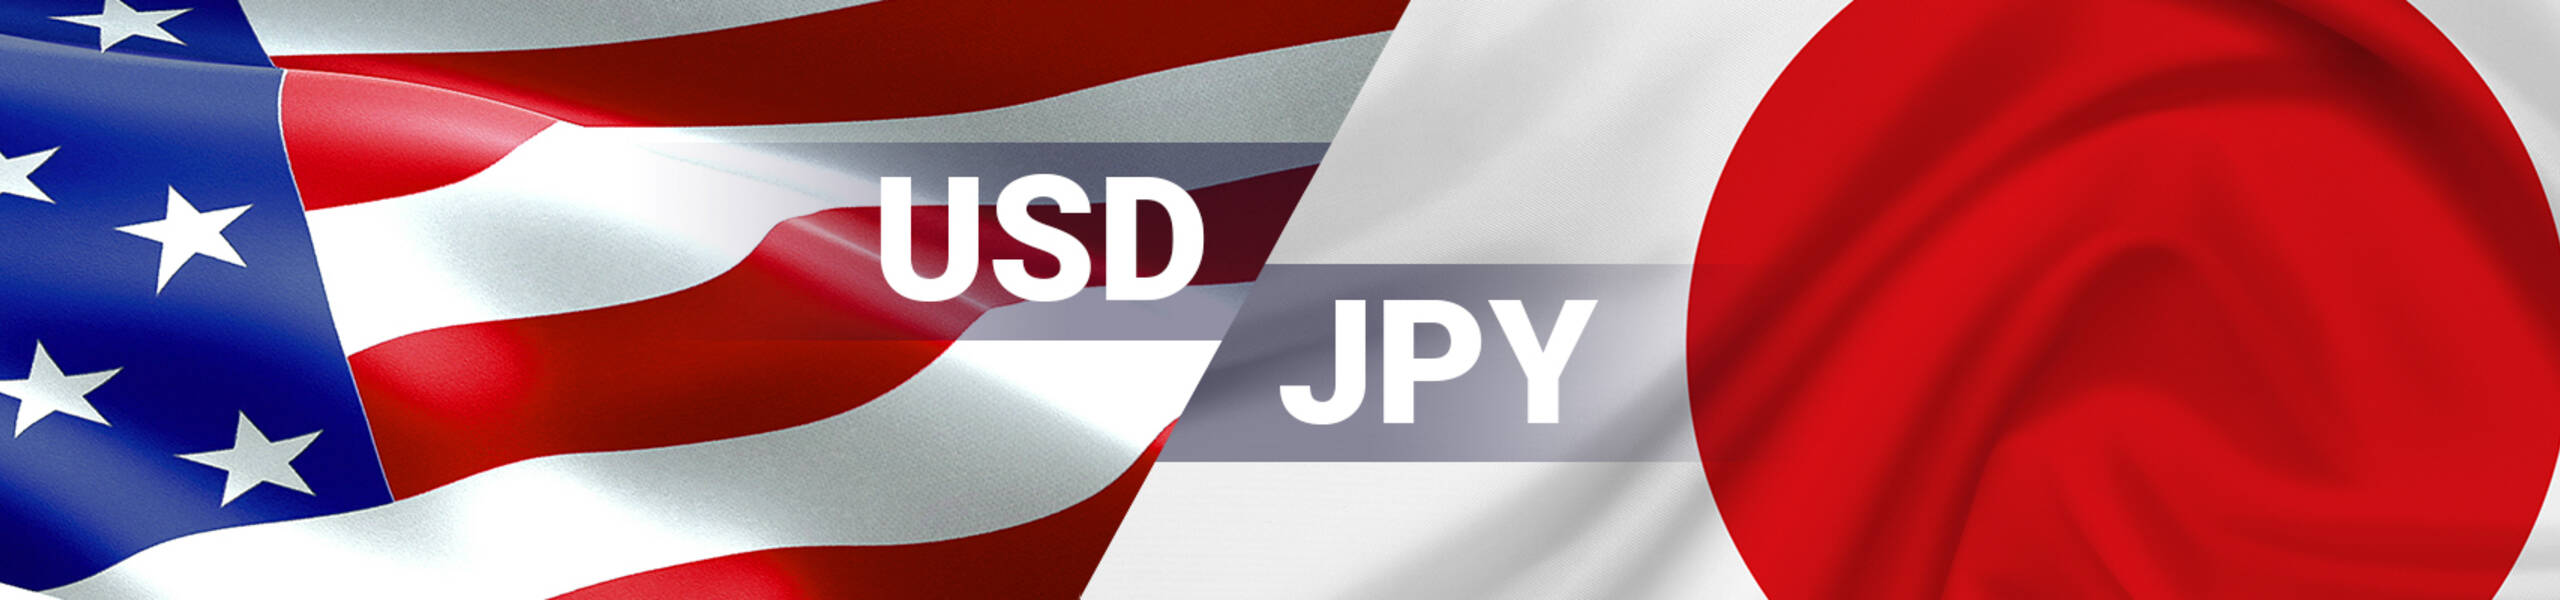 USD/JPY a la espera de corregir al alza